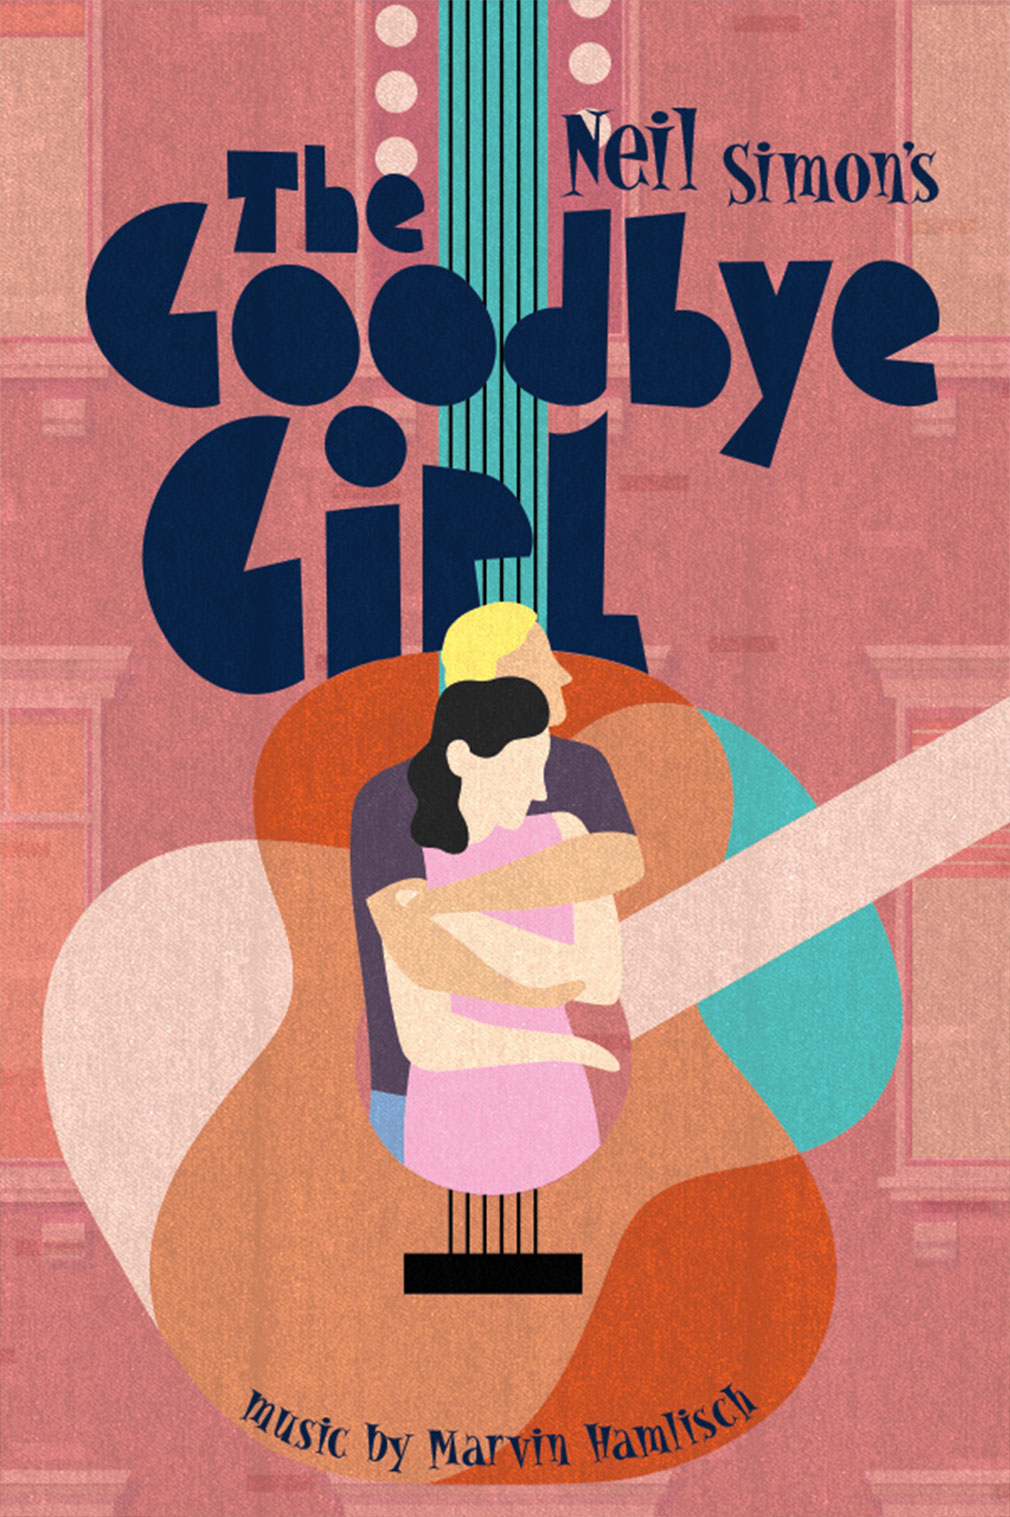 Neil Simon's The Goodbye Girl Poster